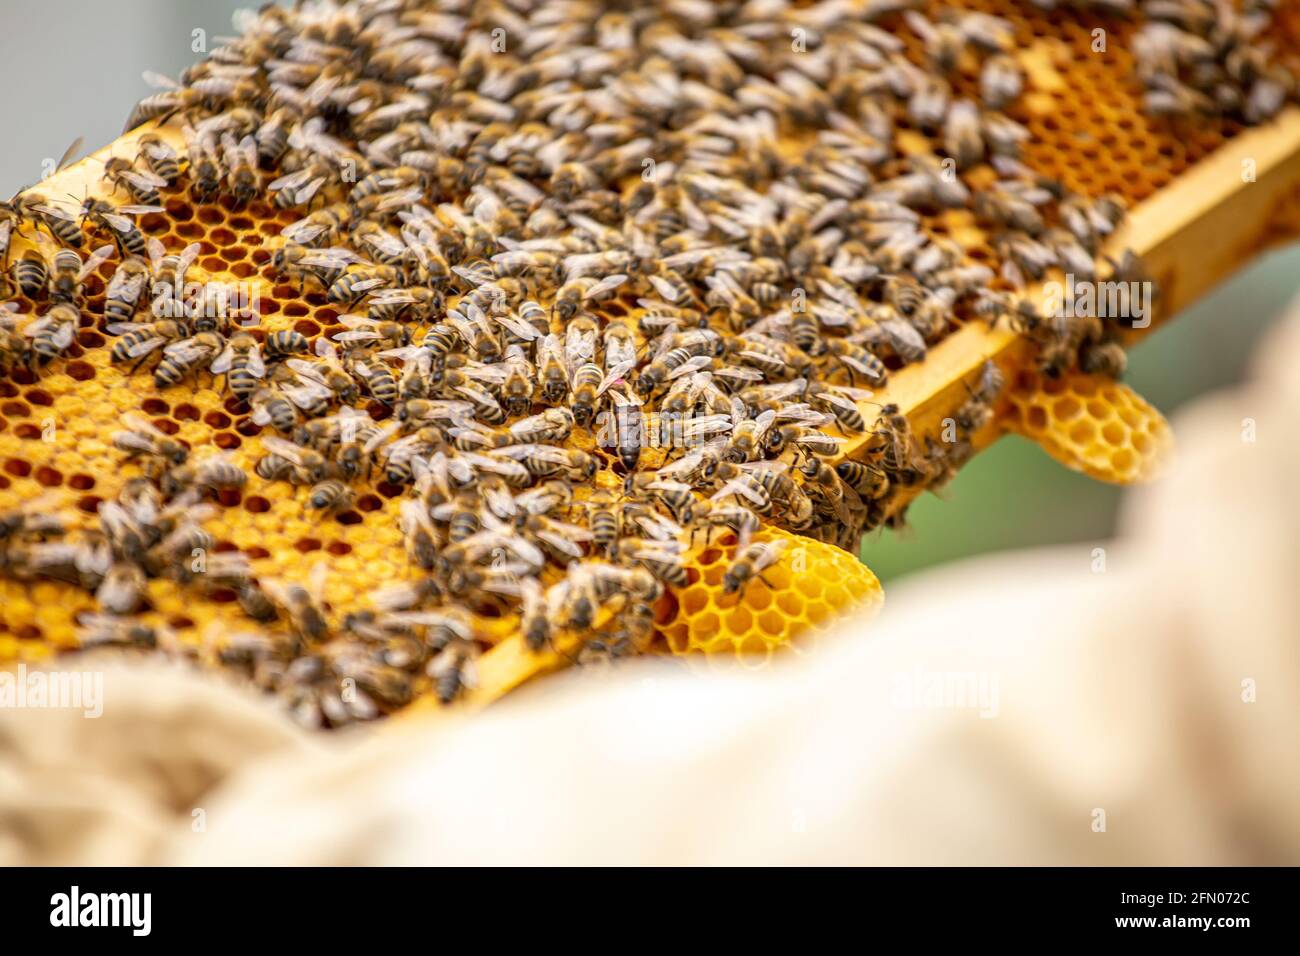 Étiquette queen abeilles rampant sur le cadre rempli d'abeilles et de couvain. Famille forte sur le cadre. Mise au point douce Banque D'Images